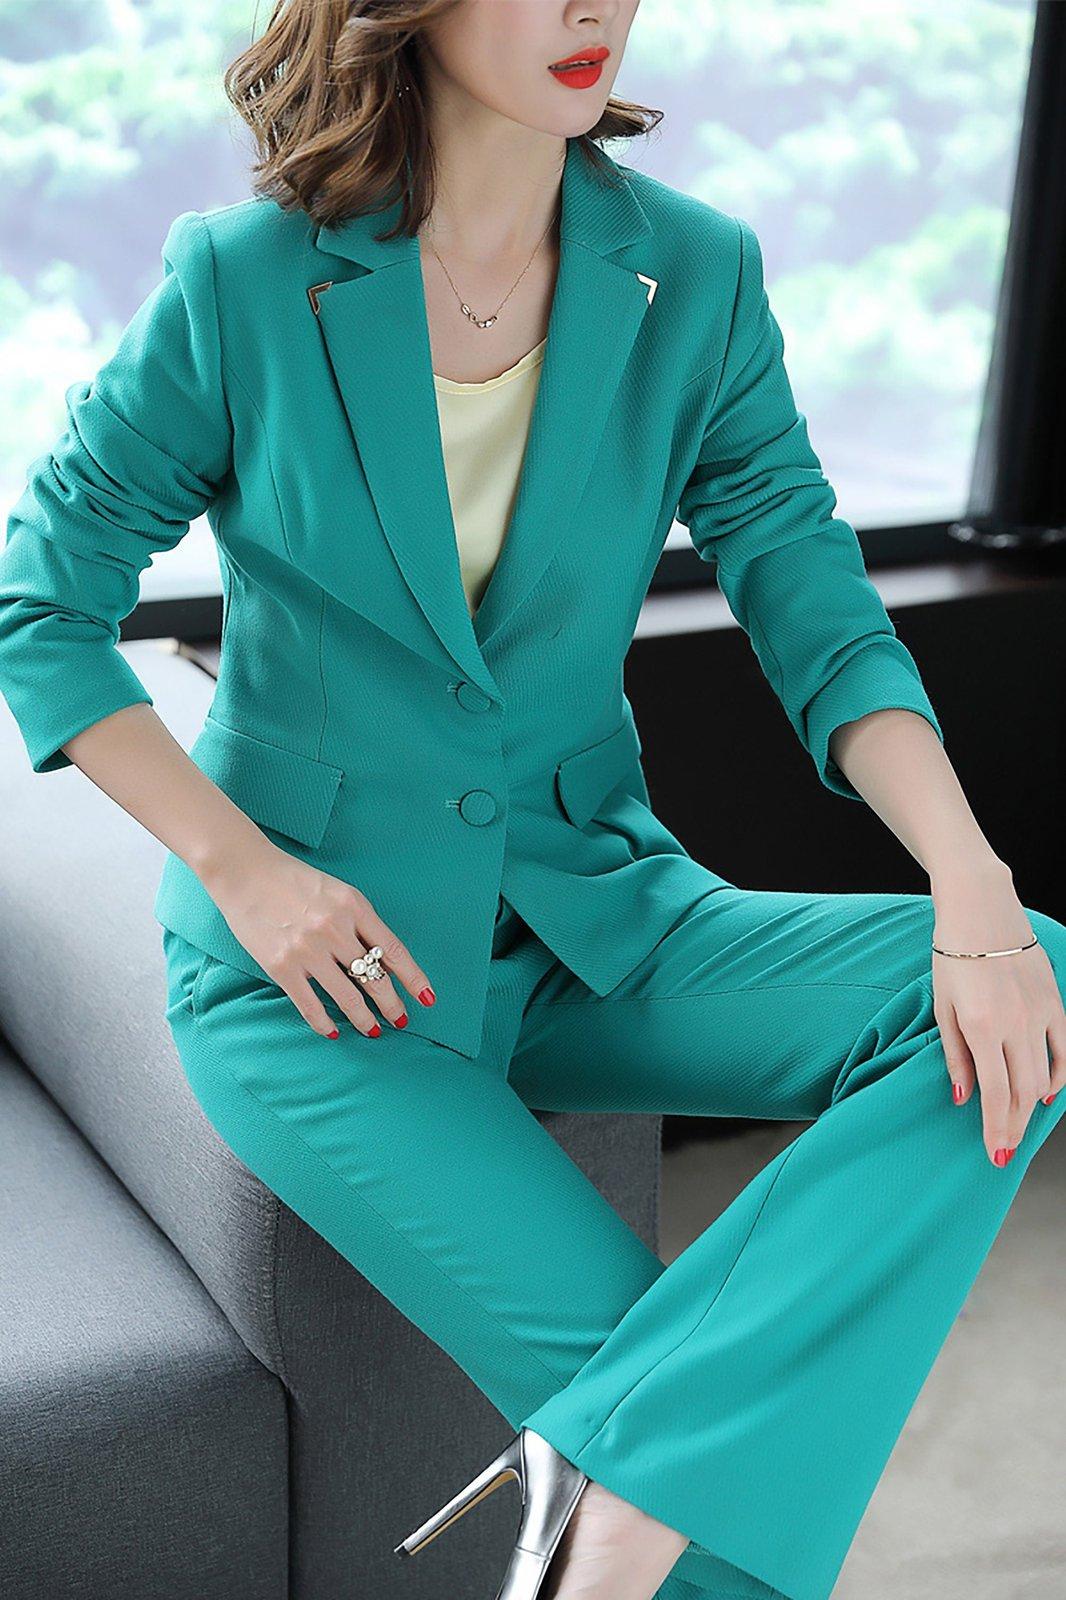 The Best Women's Suit Sets 2022: Best Women's Blazers and Pants Sets